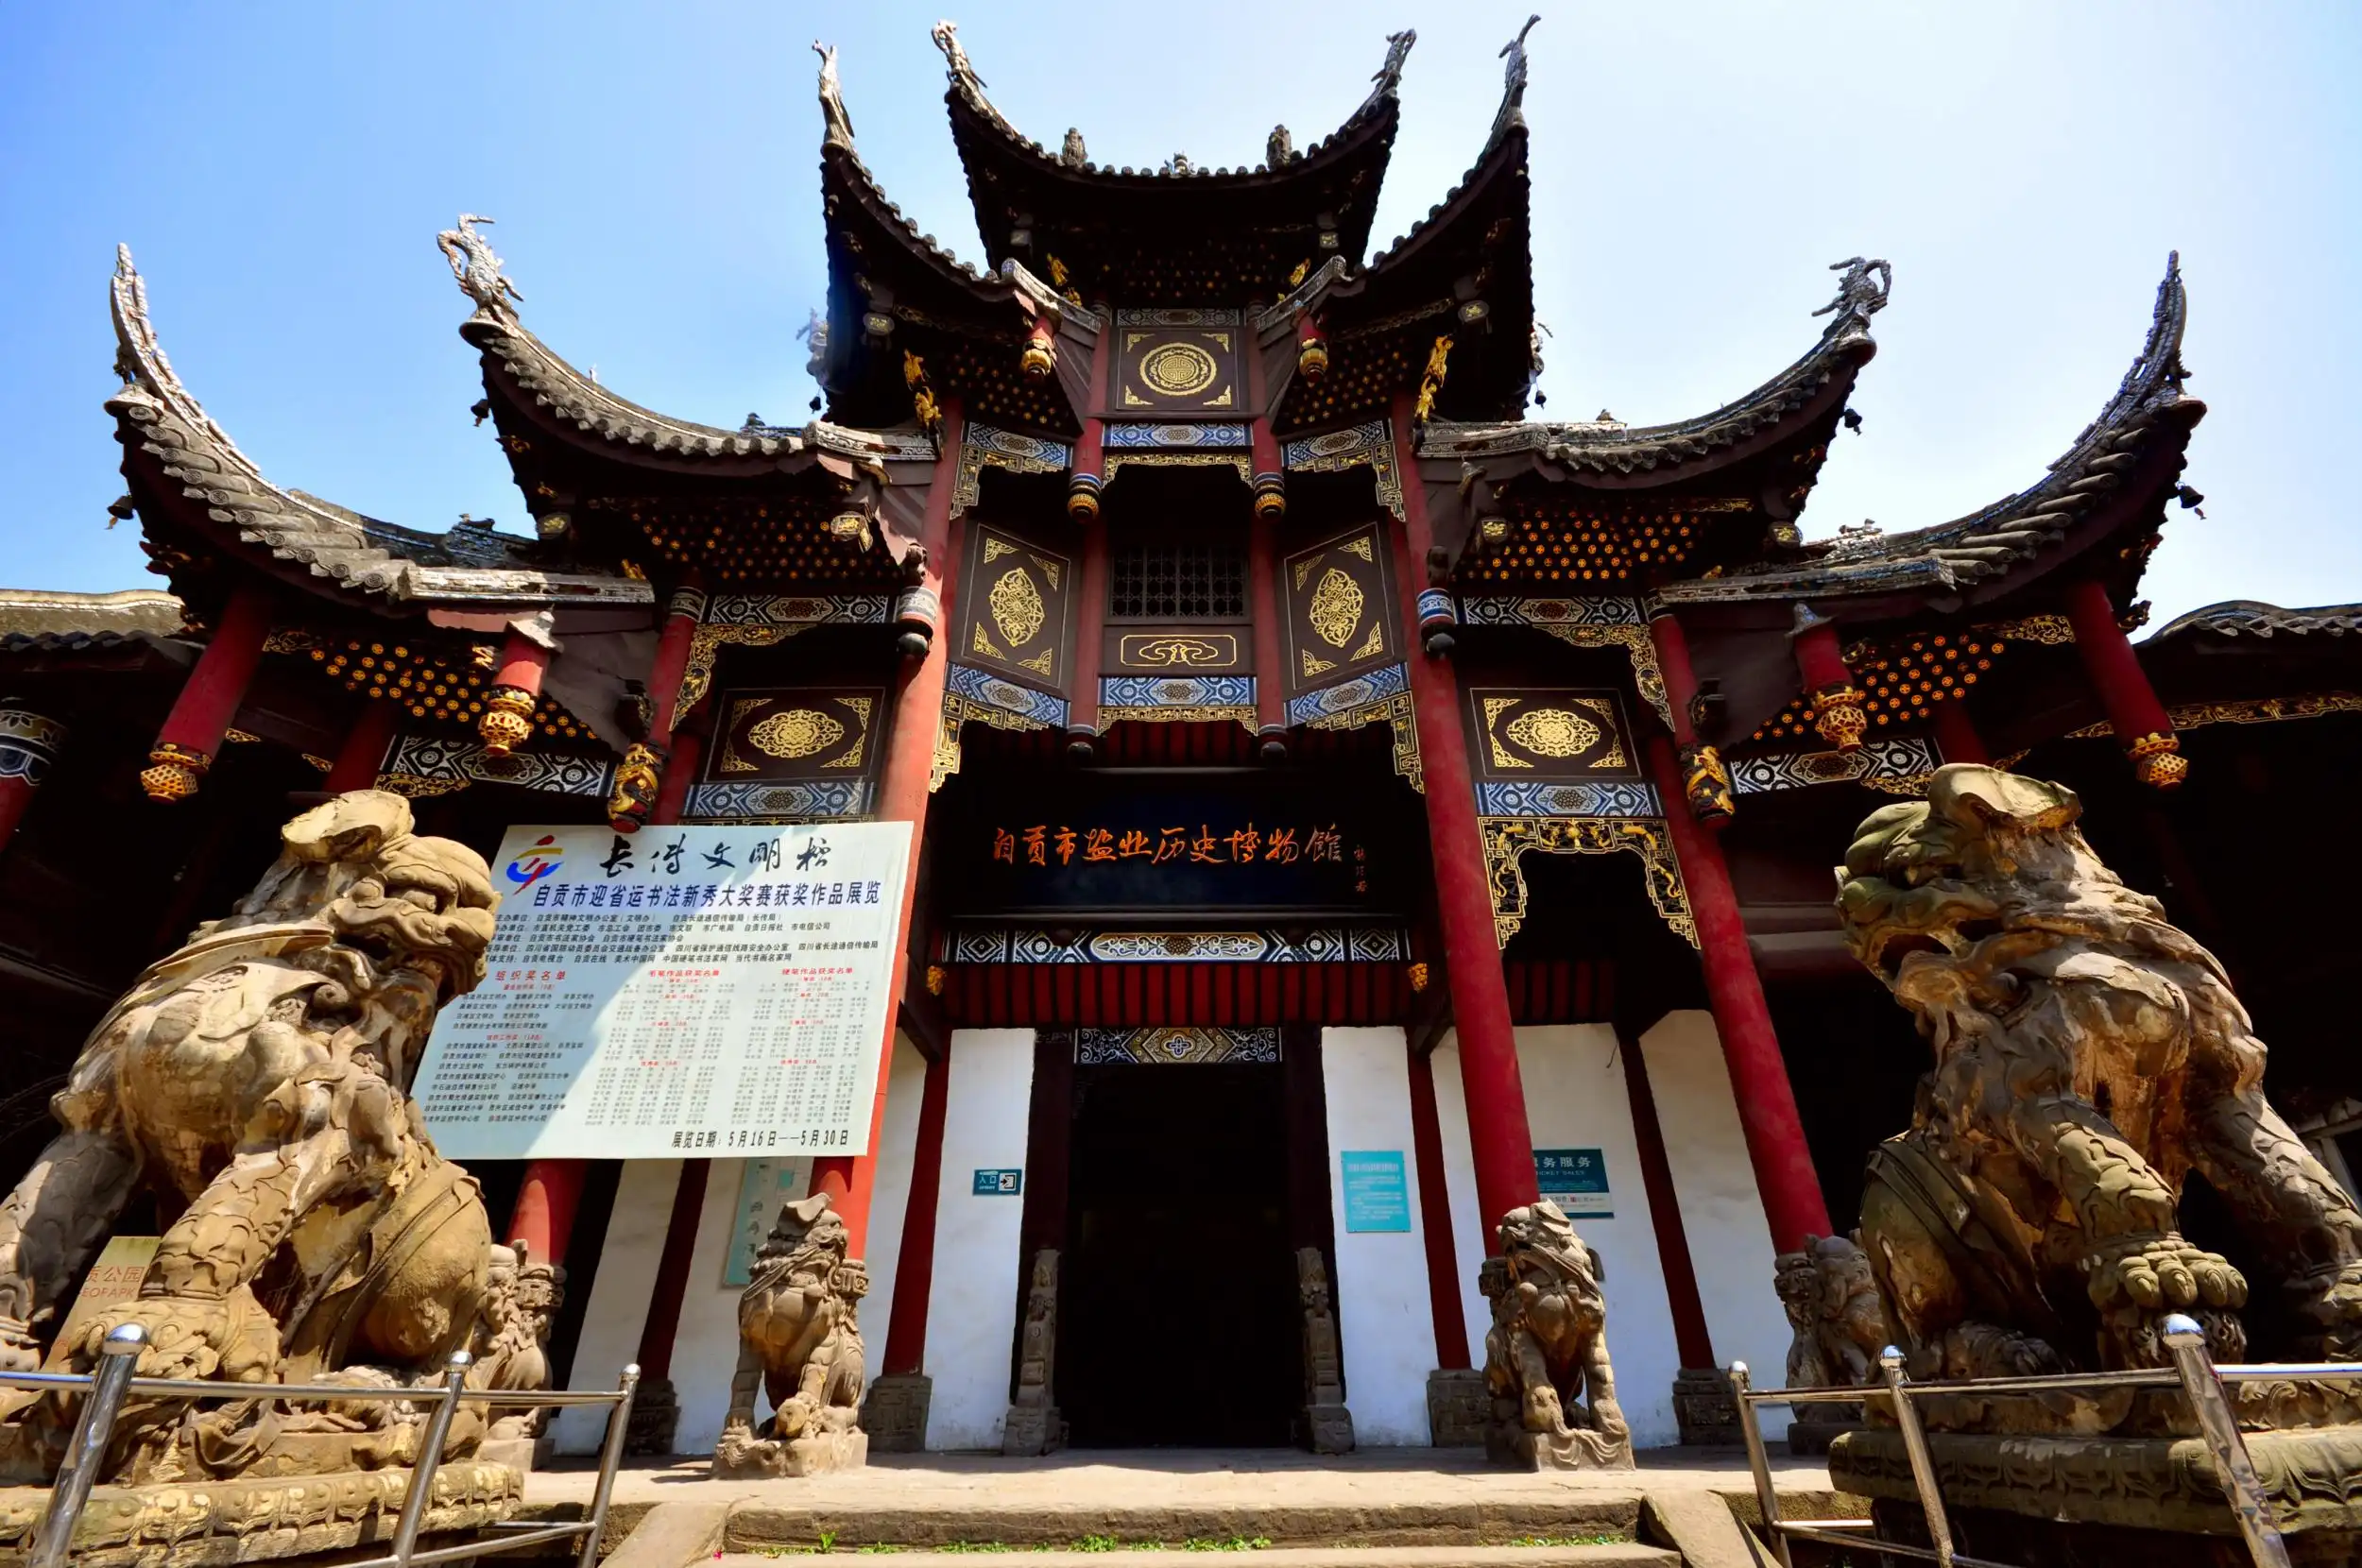 Zigong tourism